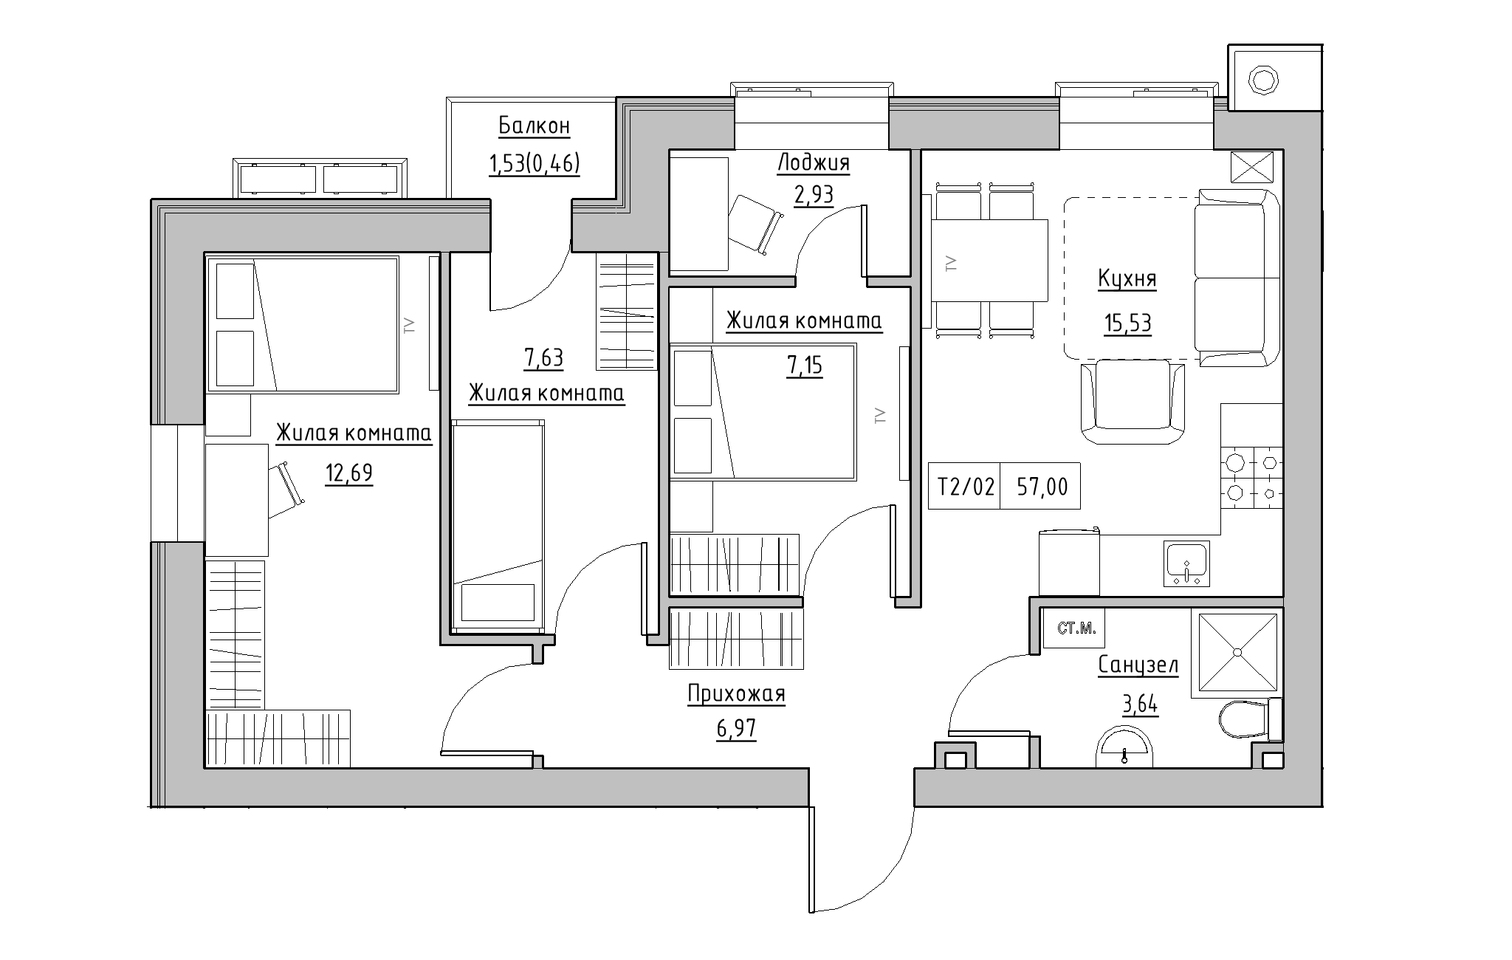 Планування 3-к квартира площею 57м2, KS-013-04/0006.